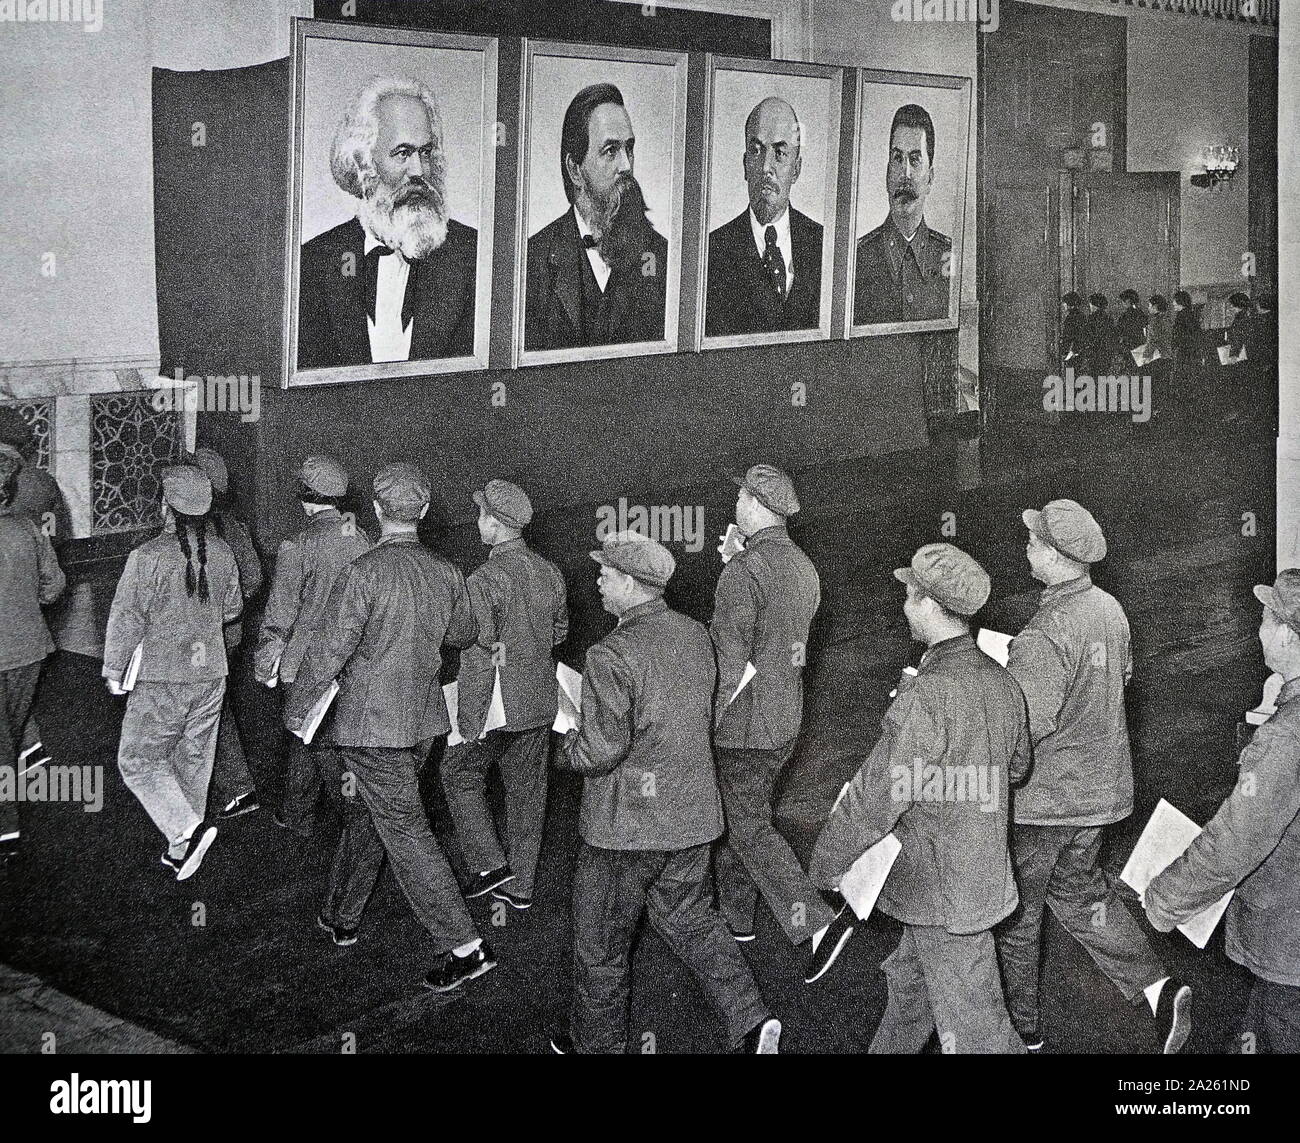 Porträts von Karl Marx, Friedrich Engels, Wladimir Lenin und Joseph Stalin die Delegierten begrüßen zu einer kommunistischen Partei treffen in China 1966 Stockfoto